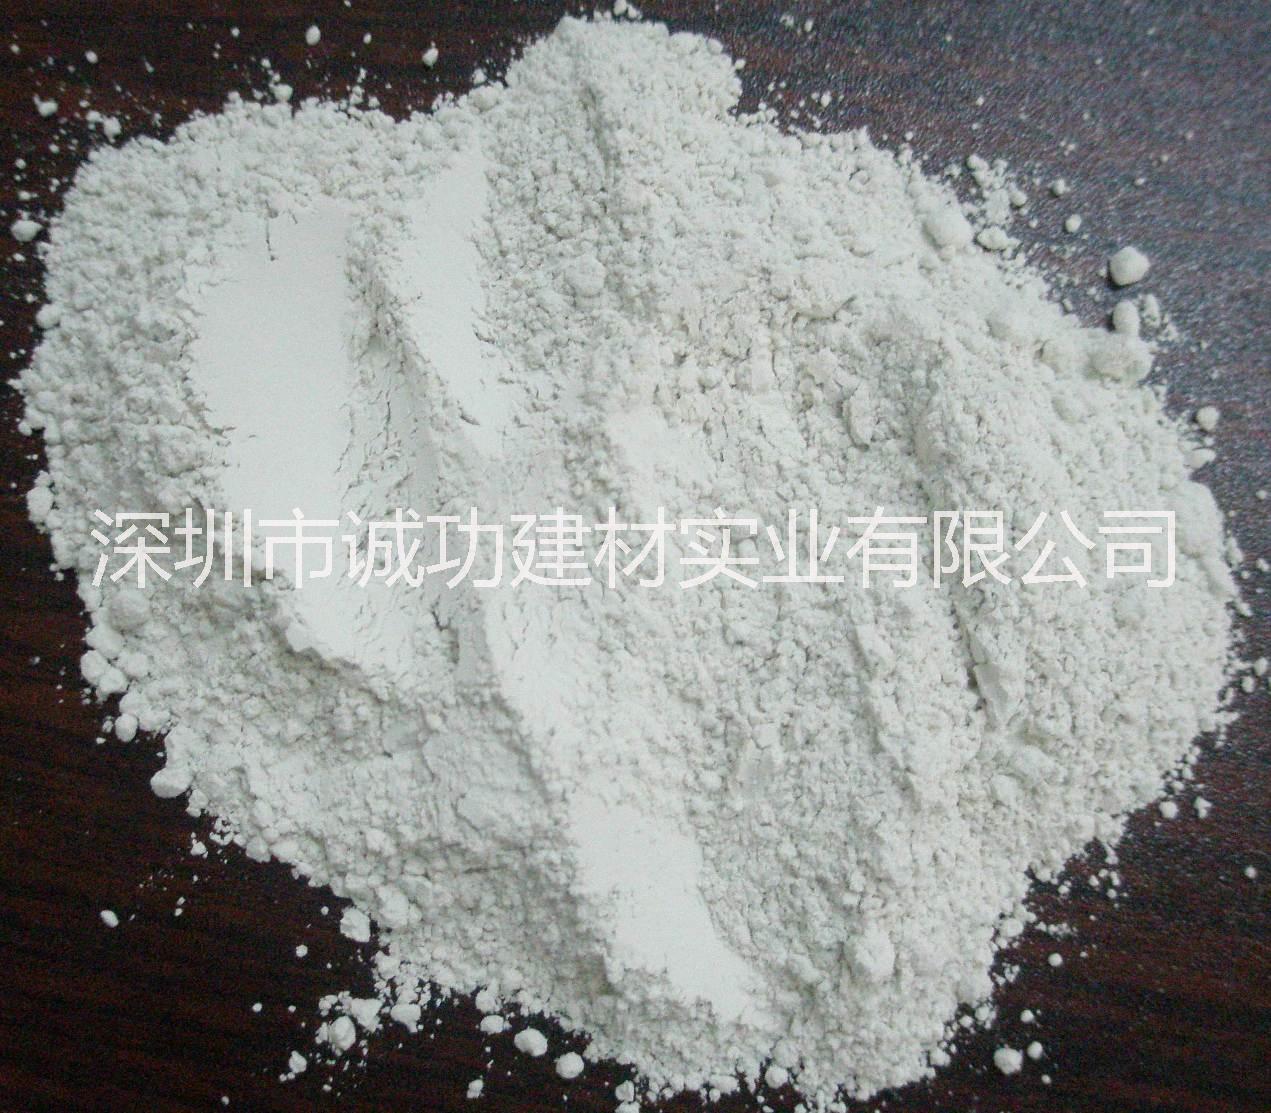 深圳诚功建材专业供应优质高铝水泥(Al2O3 70%)图片